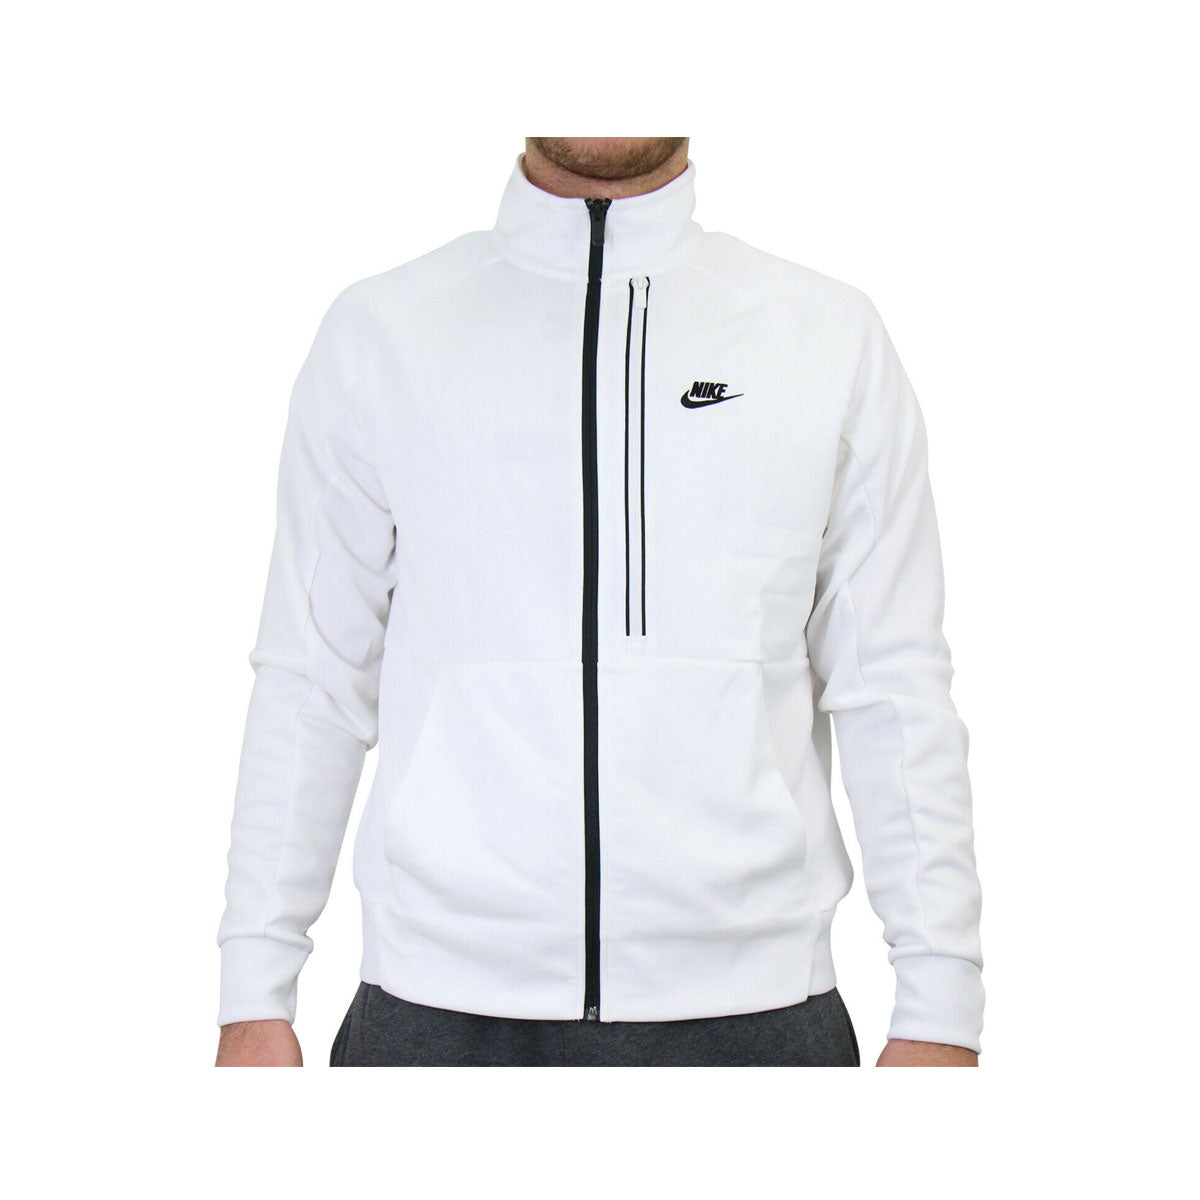 Nike Men's N98 Tribute Full Zip Jacket